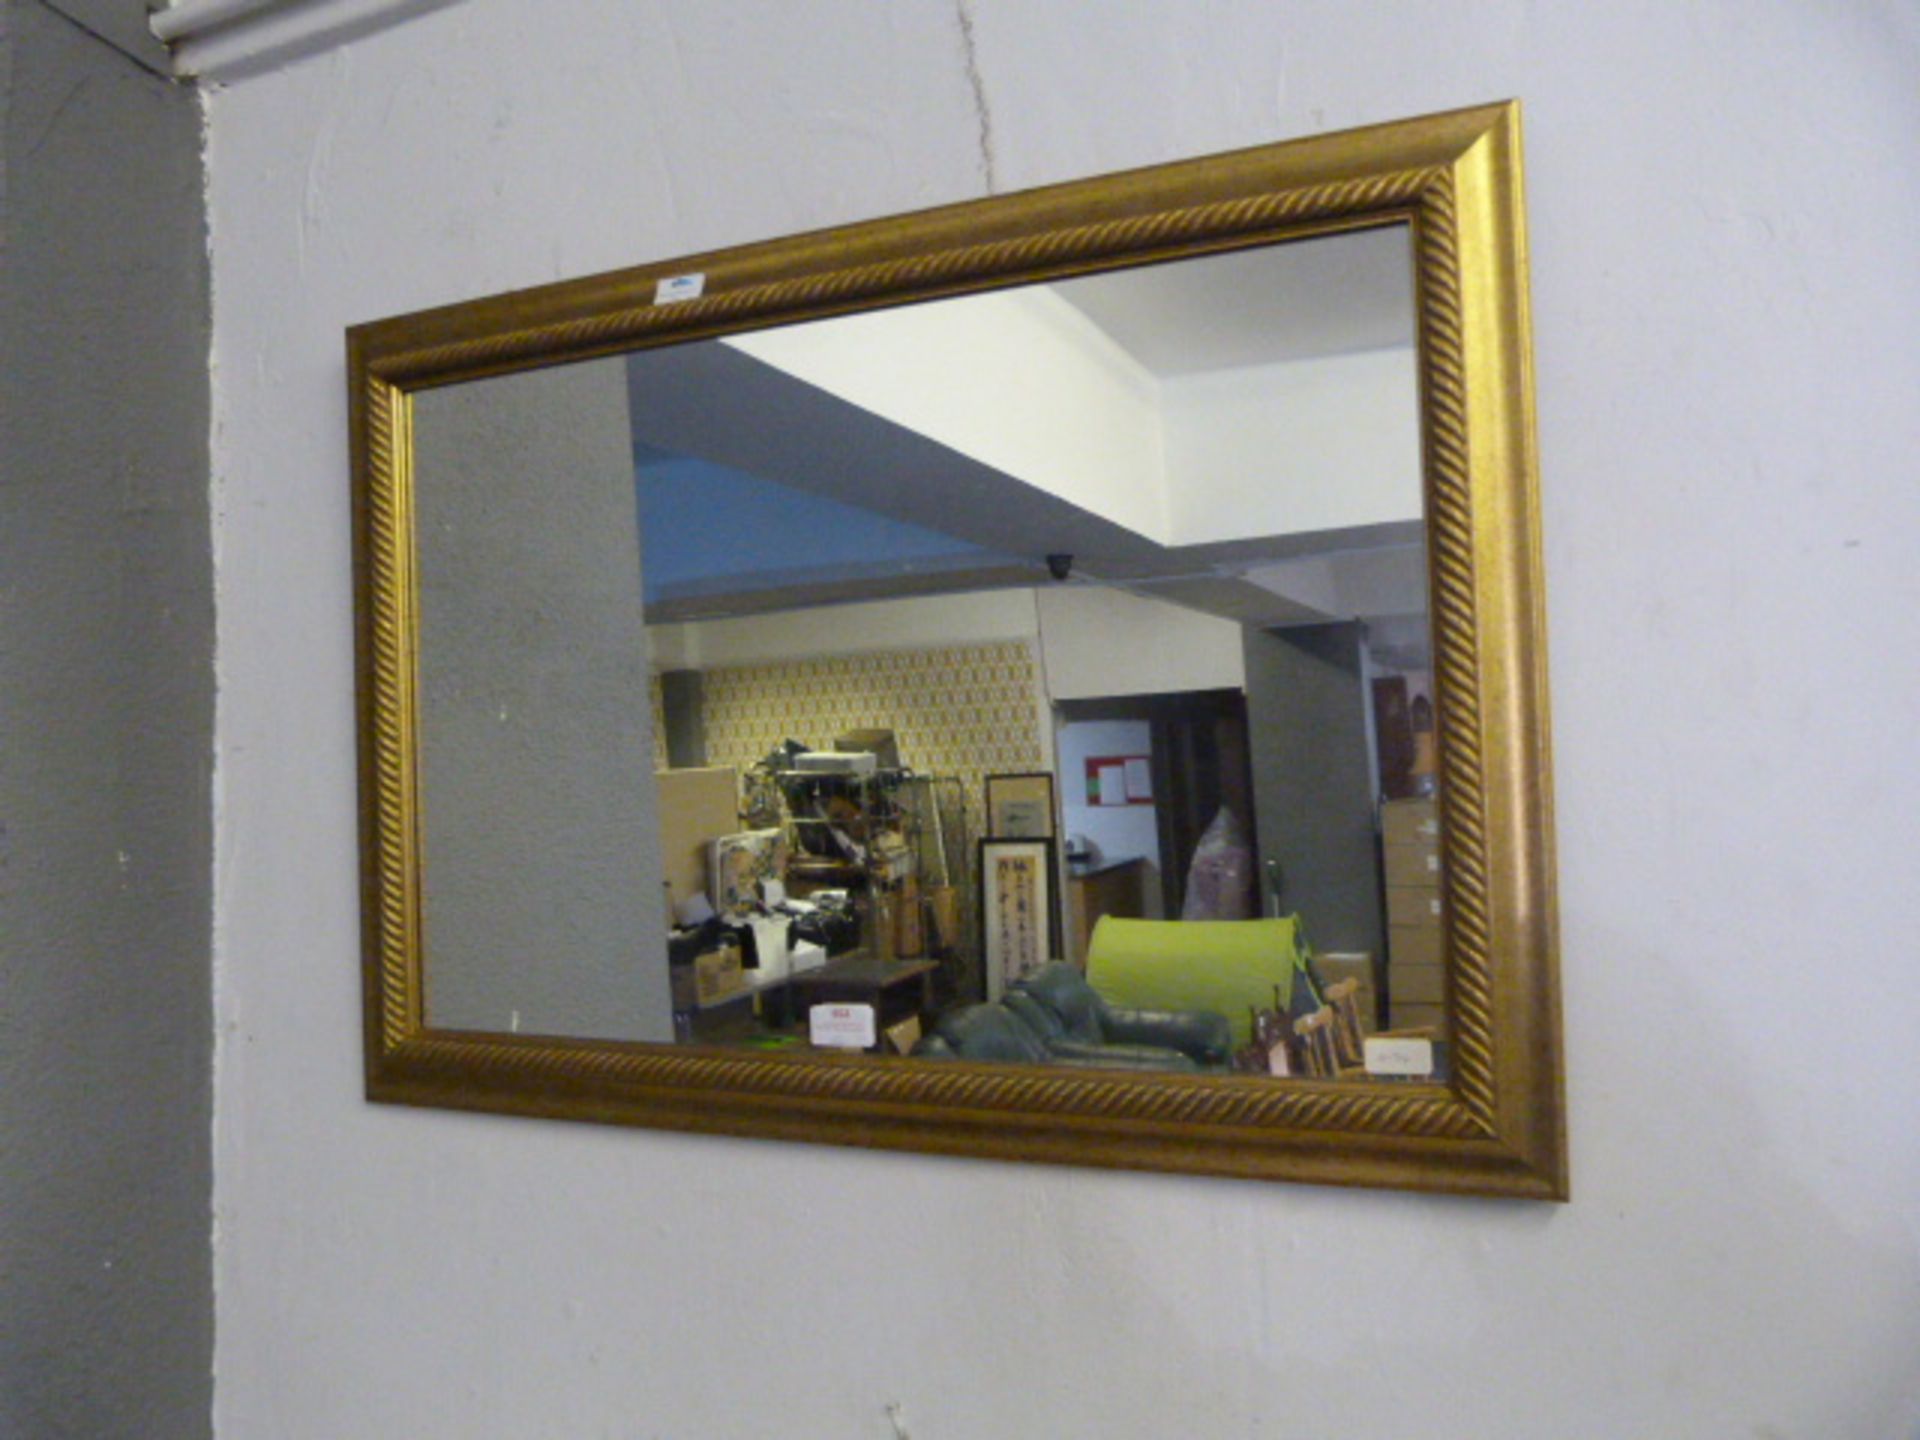 Gilt Framed Rectangular Wall Mirror